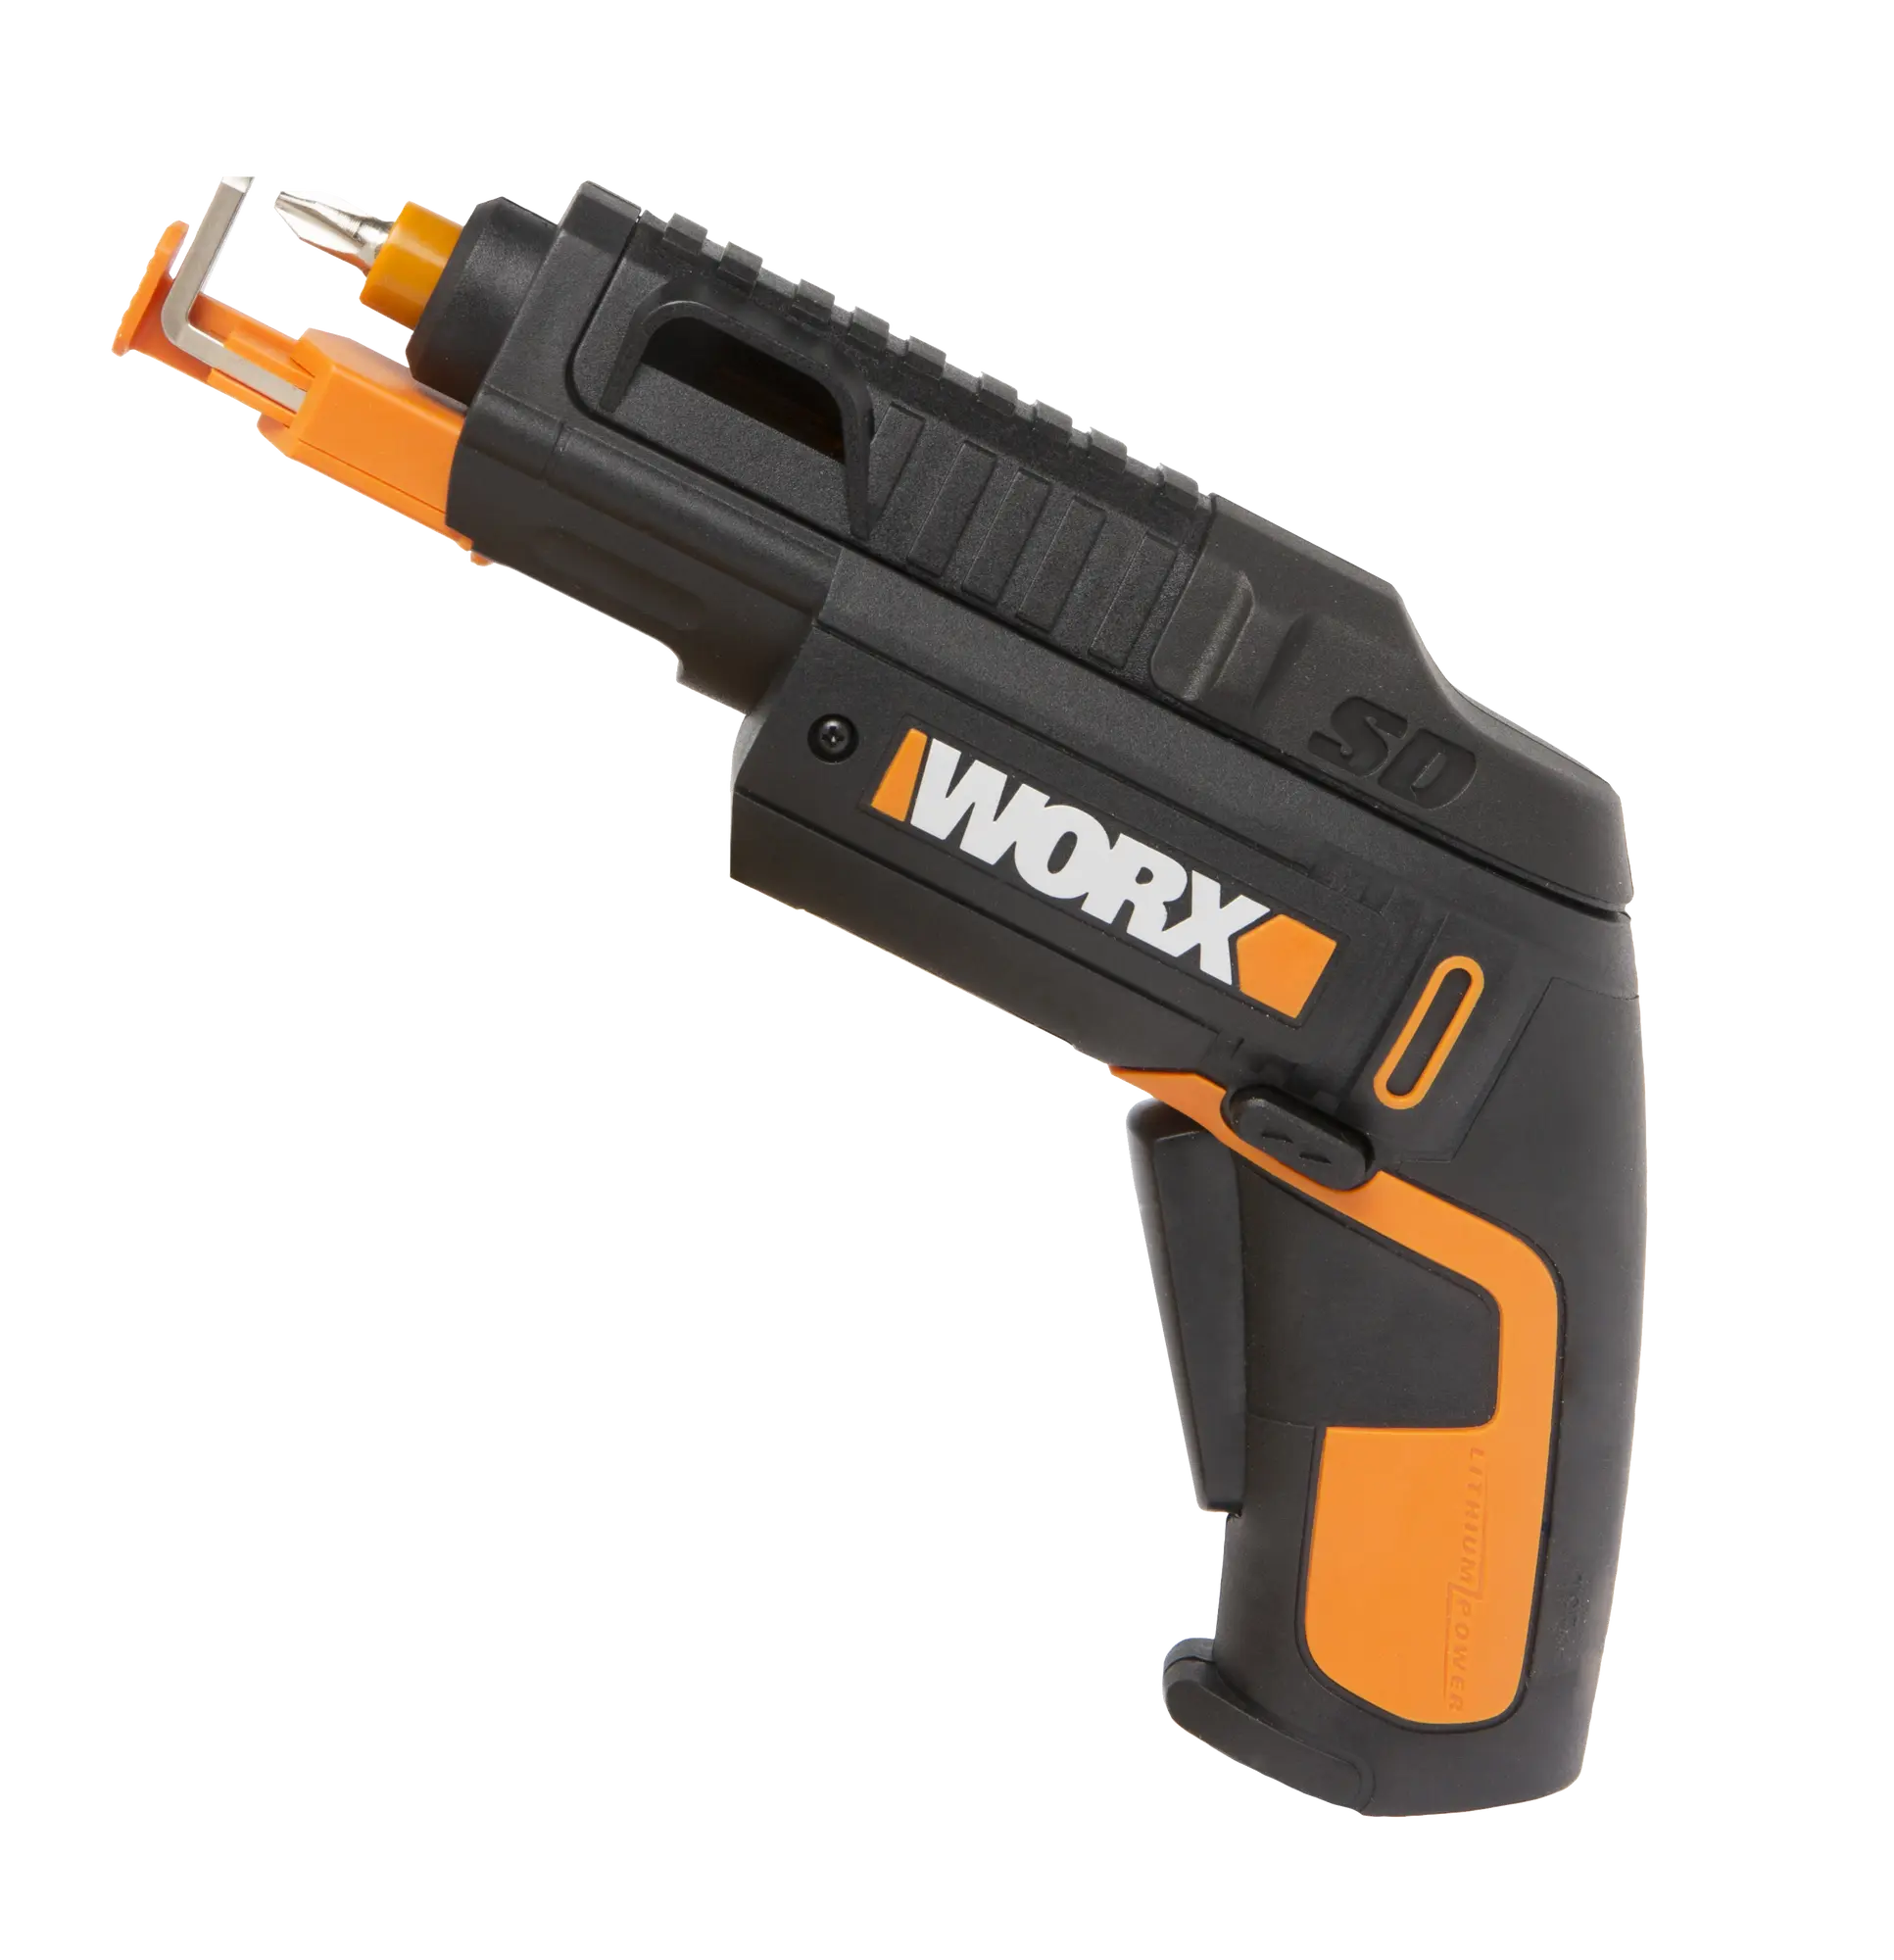 ⇒ Atornillador a bateria worx wx255 4v con soporte tornillos